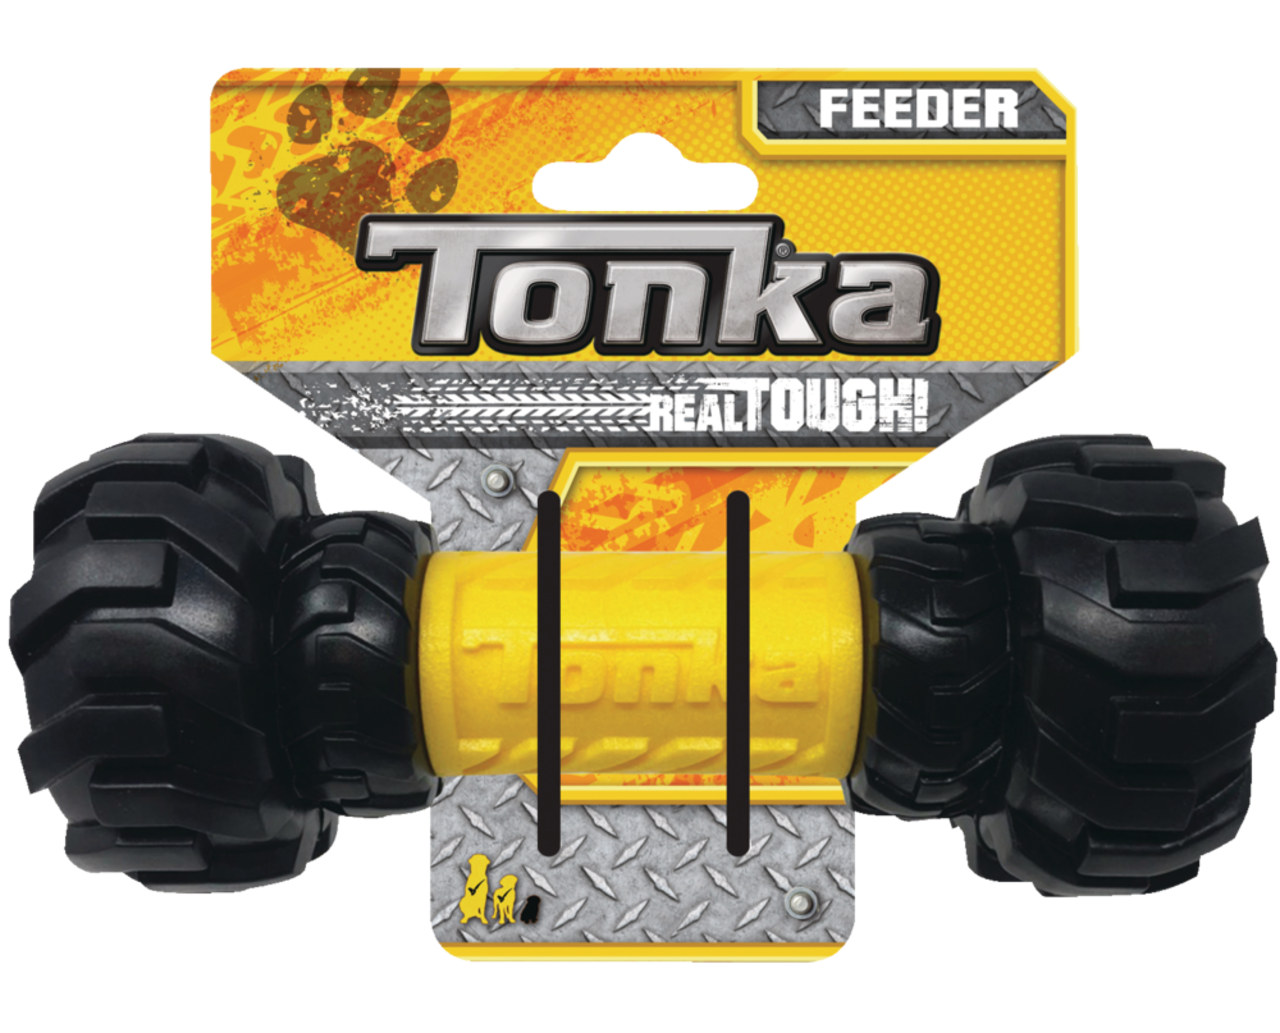 Tonka - Axle Feeder Dog Toy